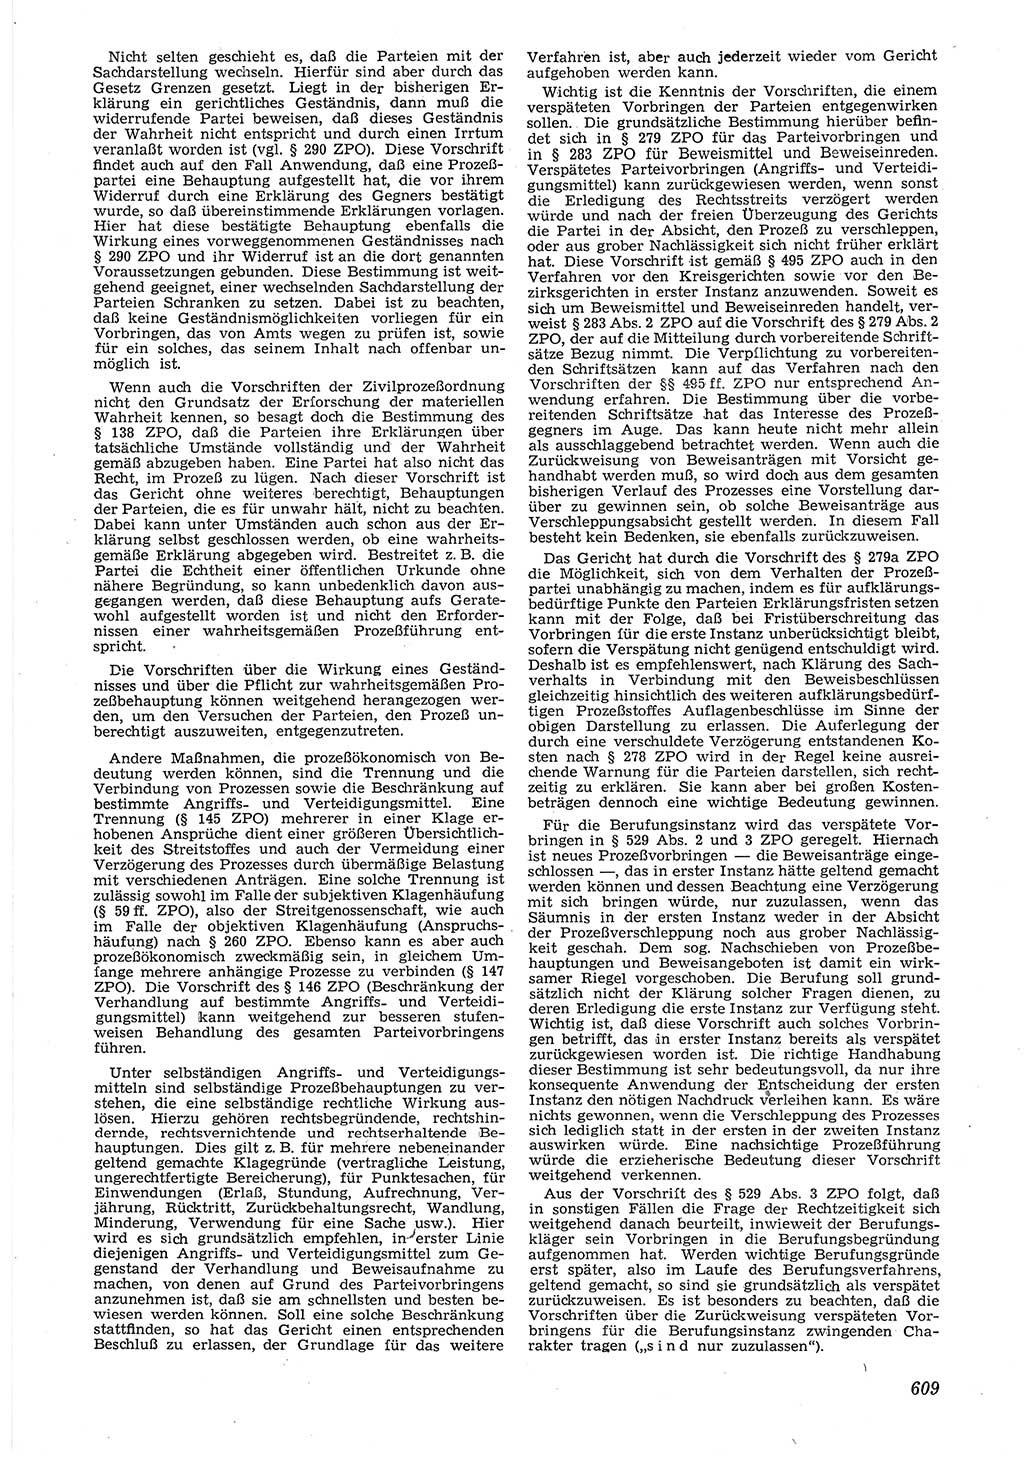 Neue Justiz (NJ), Zeitschrift für Recht und Rechtswissenschaft [Deutsche Demokratische Republik (DDR)], 6. Jahrgang 1952, Seite 609 (NJ DDR 1952, S. 609)